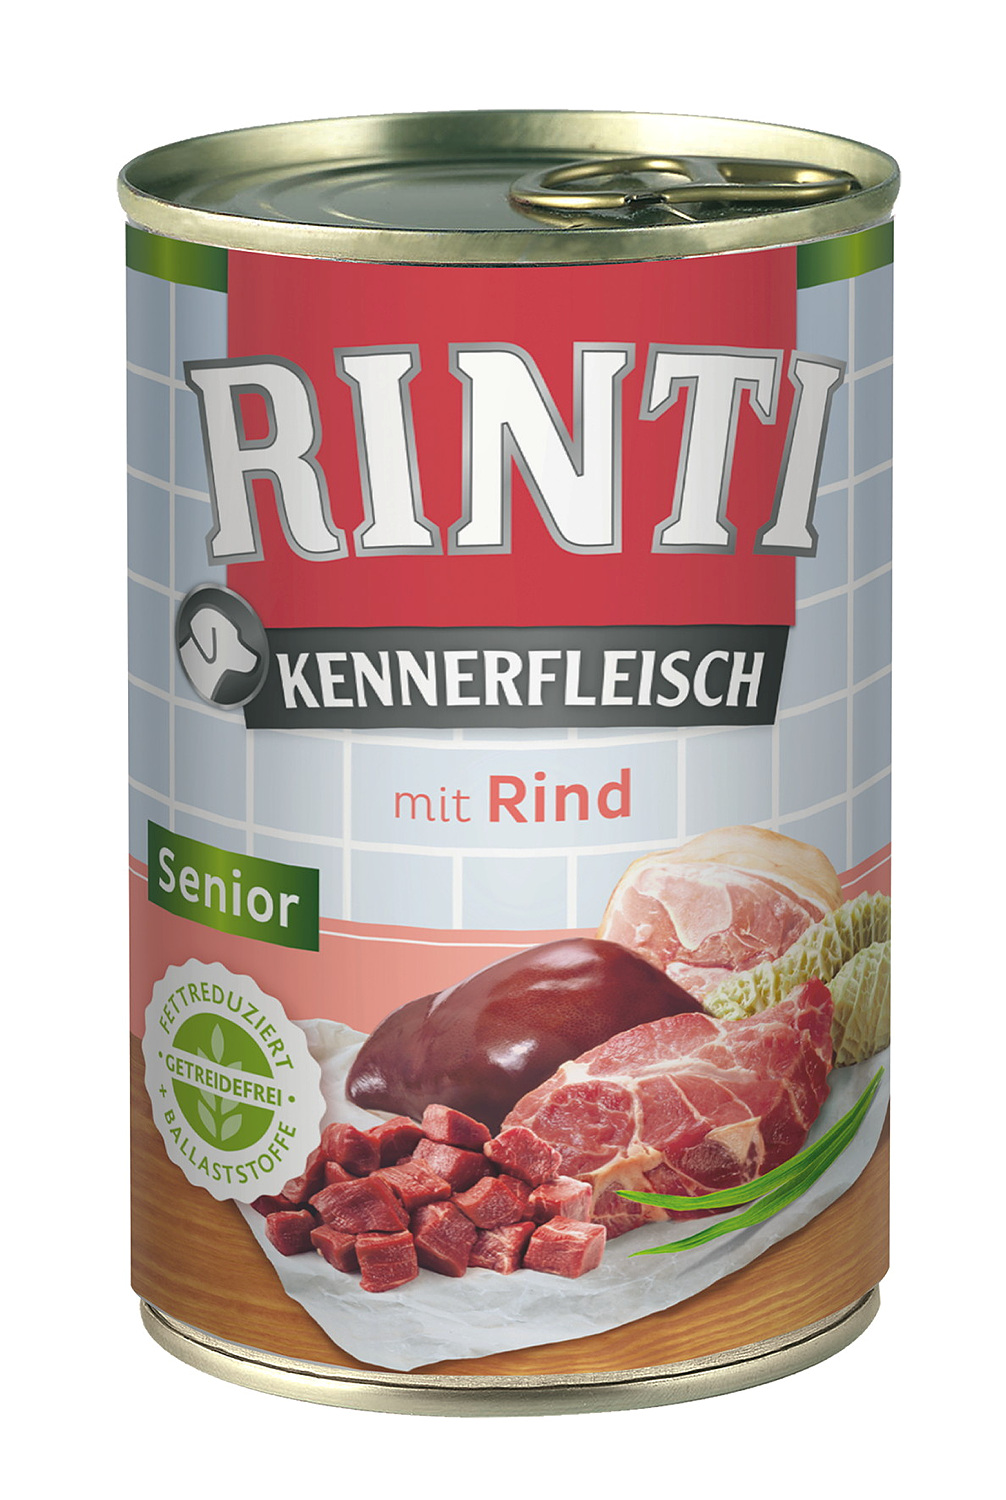 Rinti Kennerfleisch Senior mit Rind 400 g